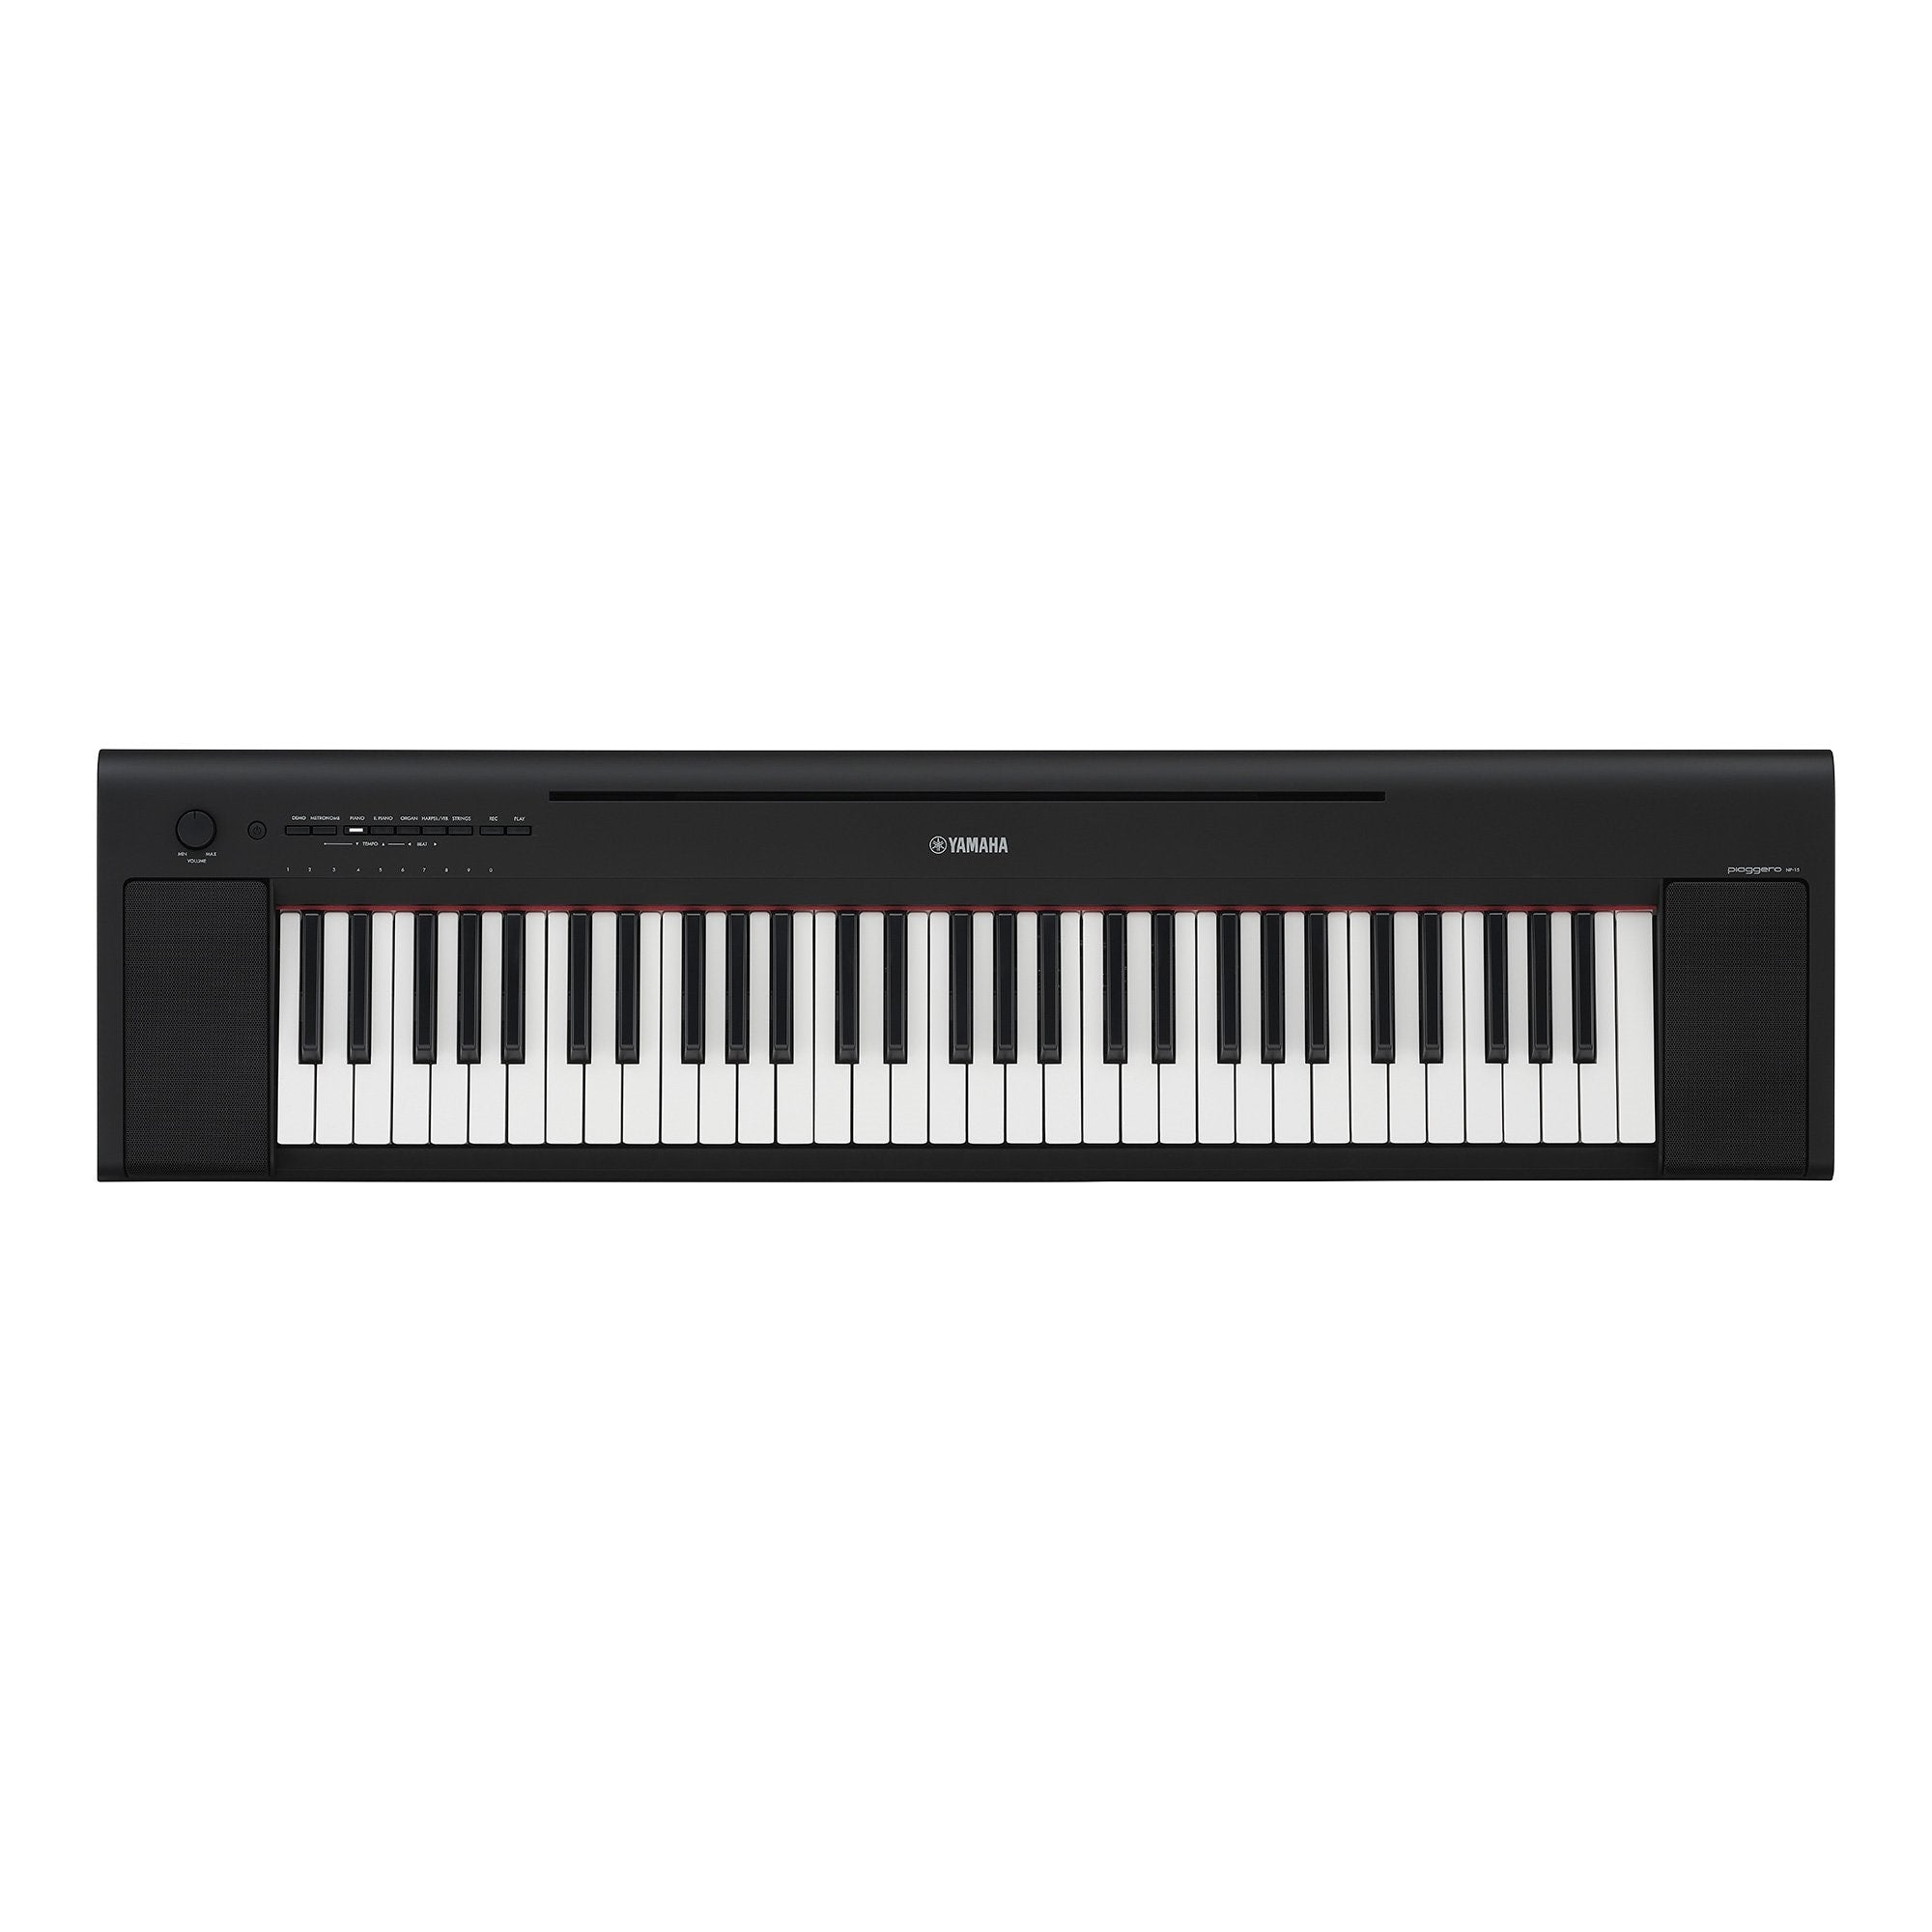 Yamaha NP-15 Piaggero 61-Key Piano-Style Keyboard